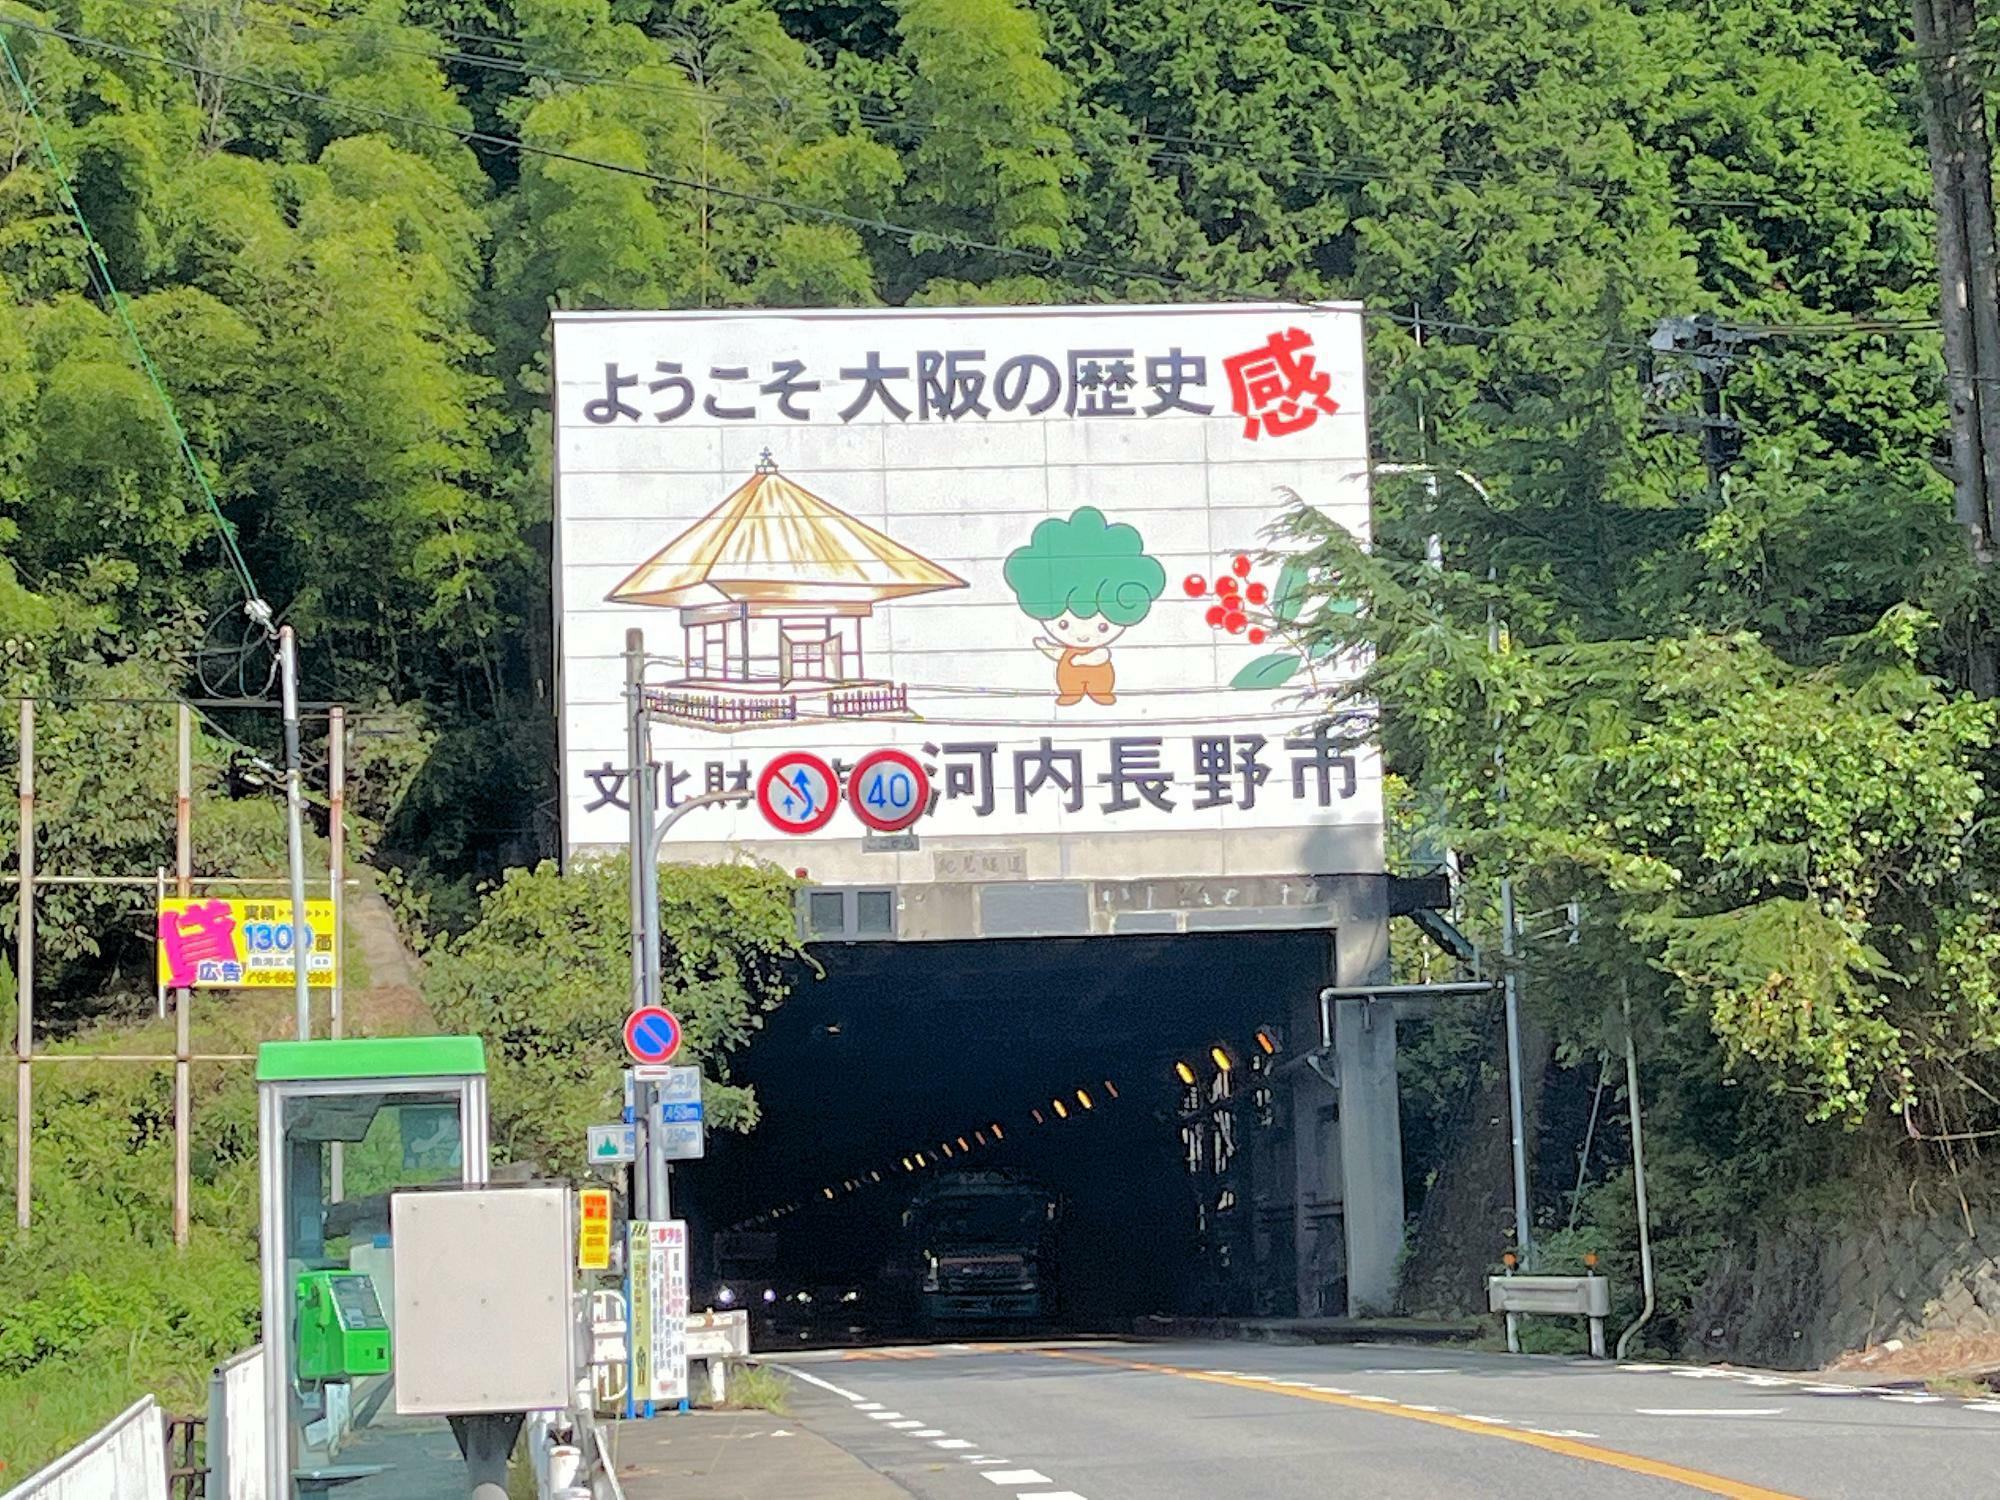 和歌山側から見た紀見トンネルにはモックルと南天と観心寺の建掛堂が描かれている